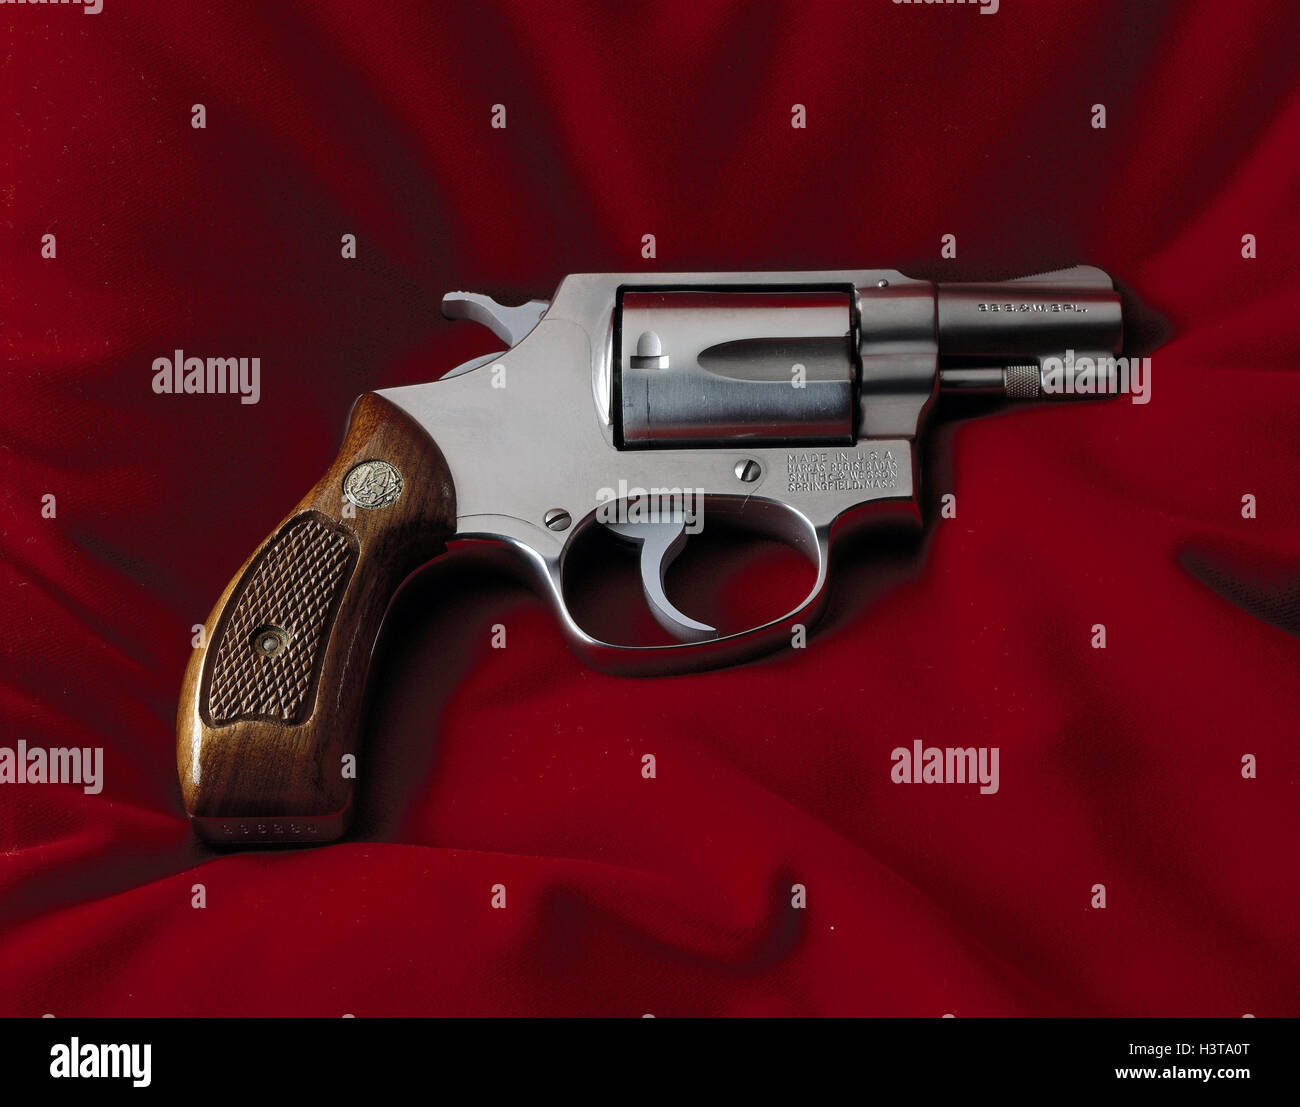 Rivoltelle, Smith & Wesson colt, 38 appositamente, still life, la fotografia del prodotto, arma, armi, armi da fuoco, pugno arma, revolver, attacco, difesa, attività criminale, sparare Foto Stock